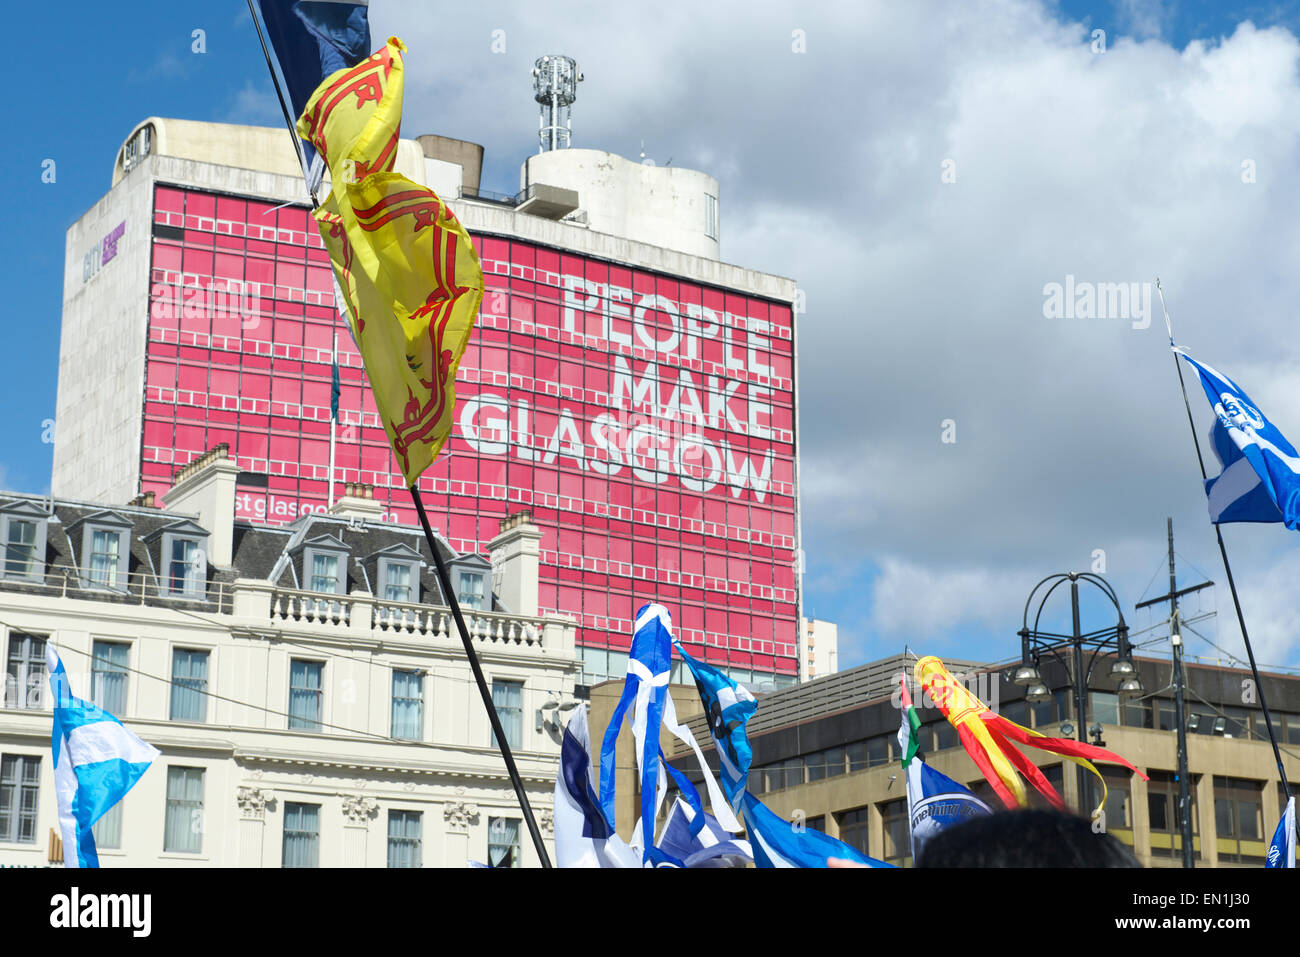 L'espoir sur la peur Rally, George Square, Glasgow. 25 avril, 2015 Banque D'Images